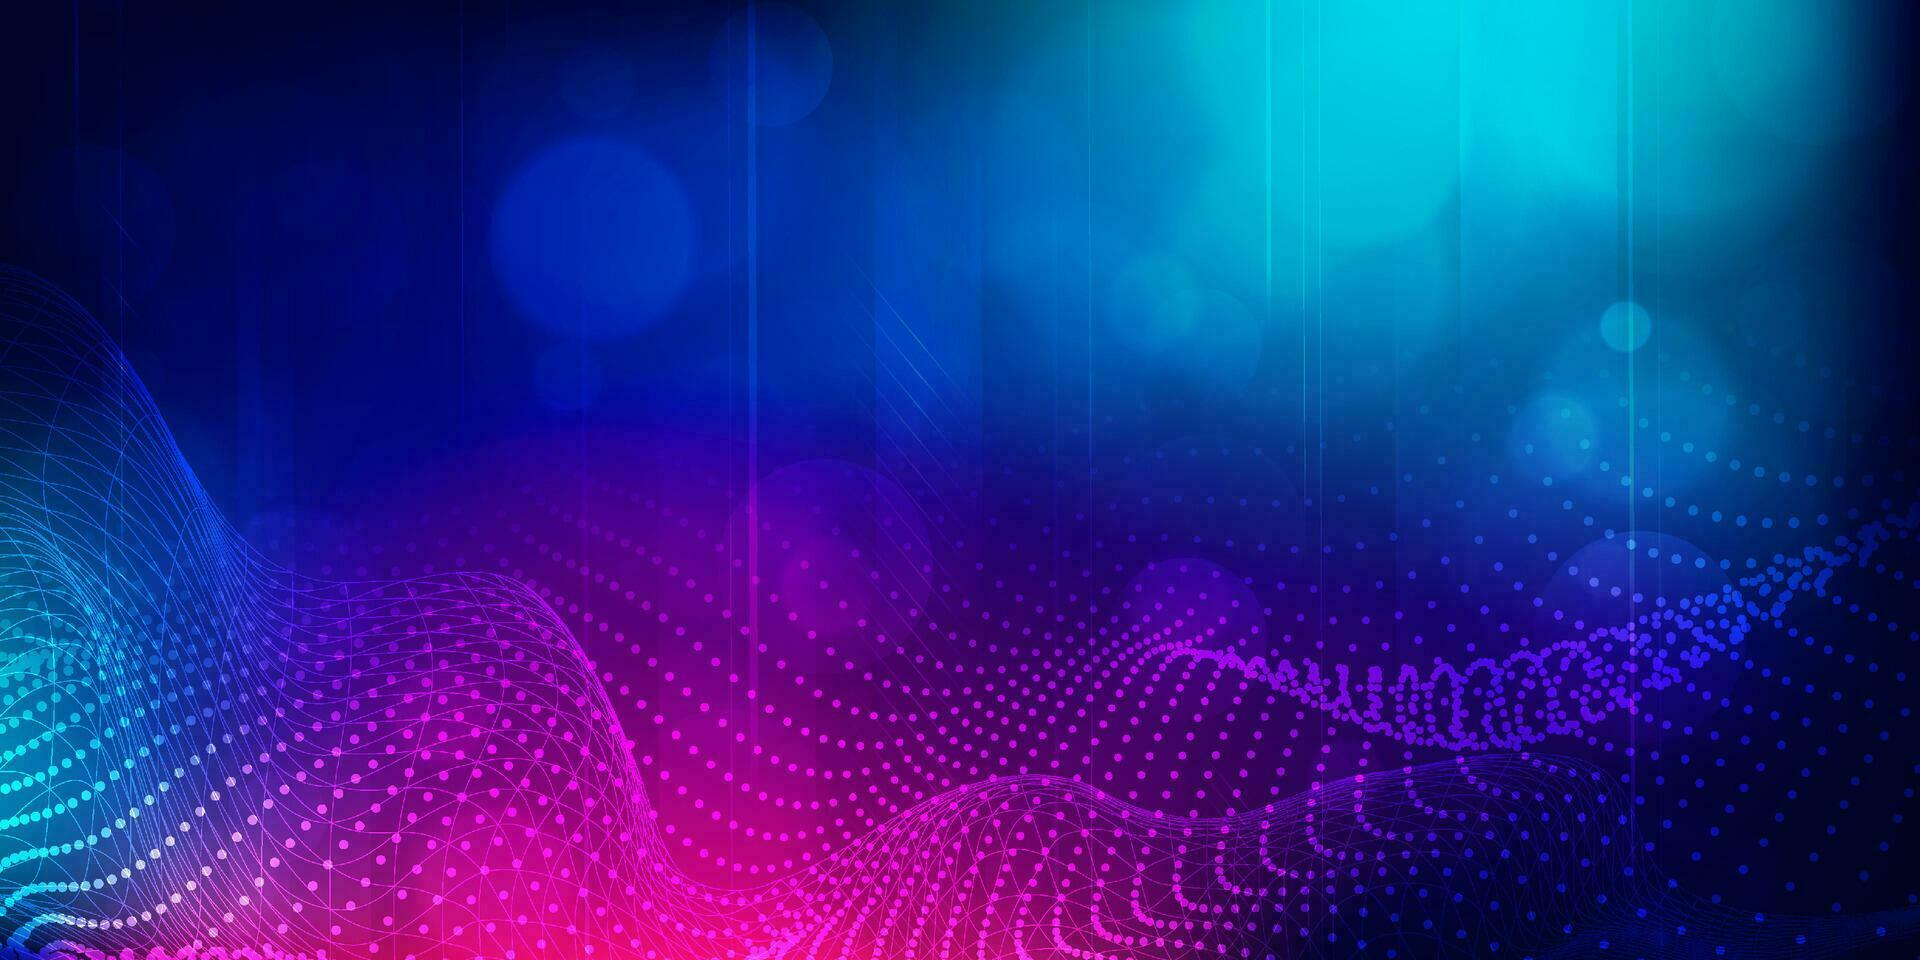 Digital Technologie futuristisch Internet Netzwerk Verbindung Blau lila Hintergrund, abstrakt Cyber Information Kommunikation, ai groß Daten Wissenschaft, Innovation Zukunft Technik, Linie Punkt Illustration Vektor 3d